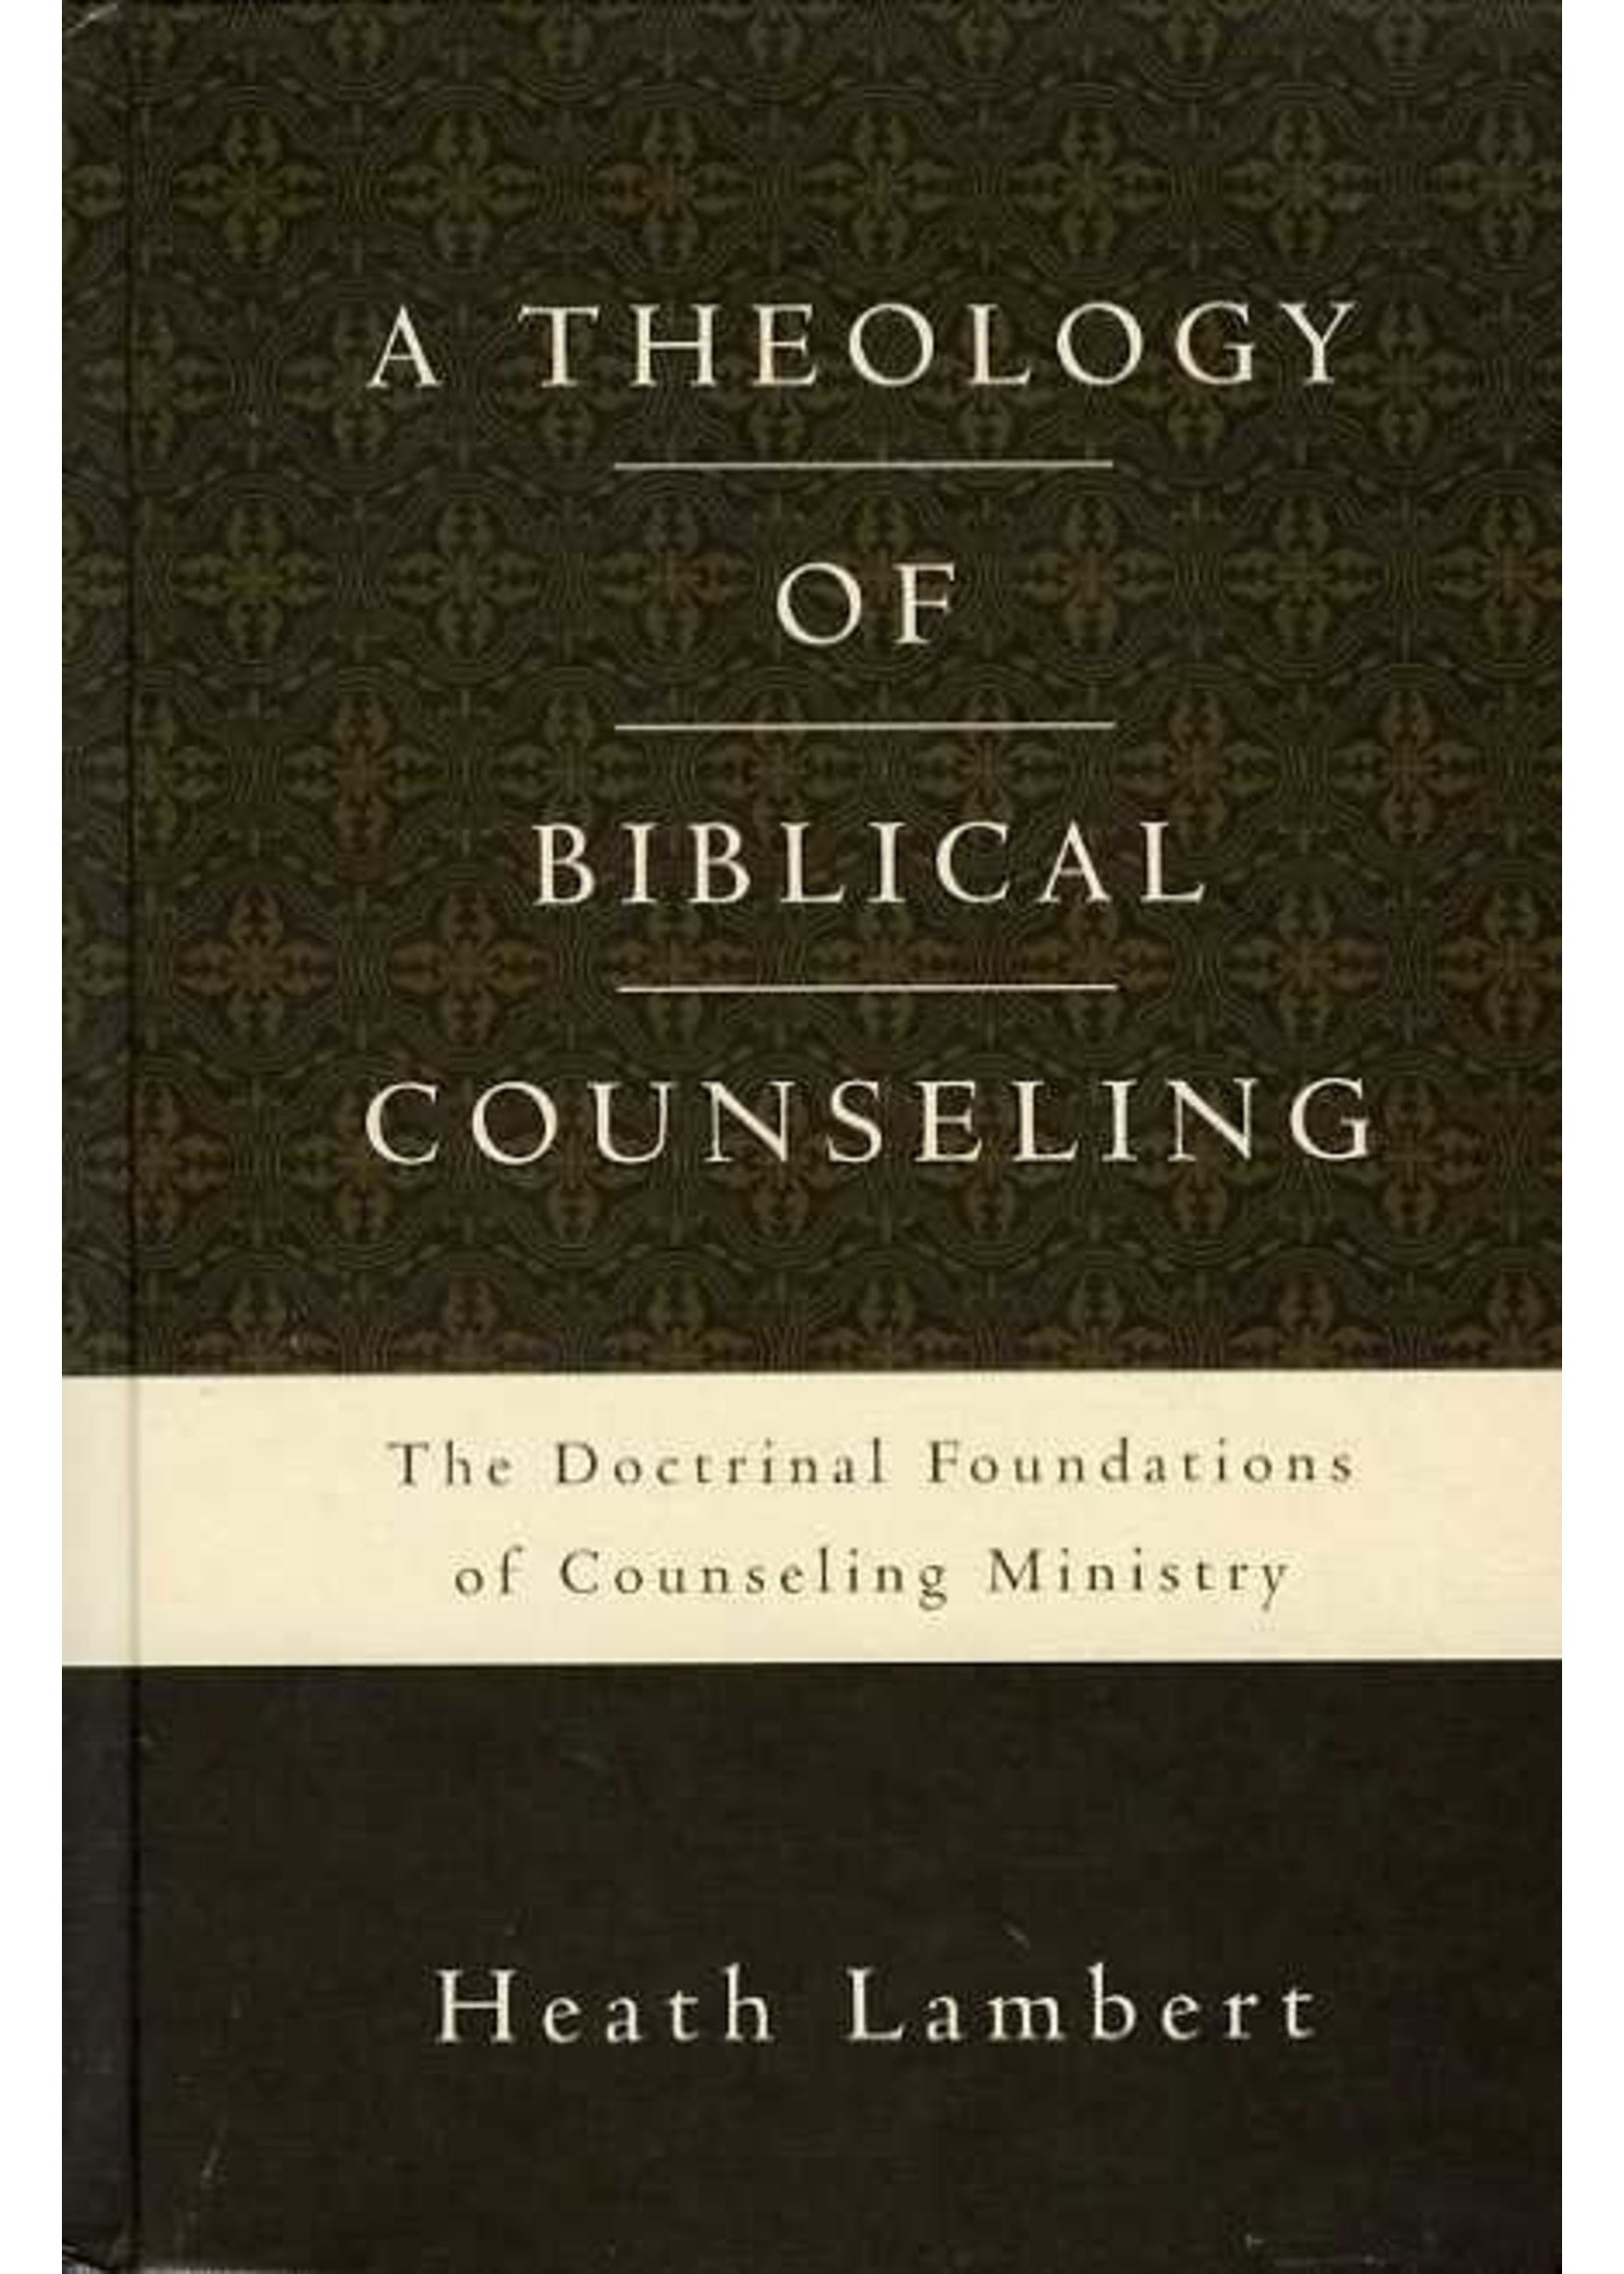 Zondervan A Theology of Biblical Counseling - Heath Lambert